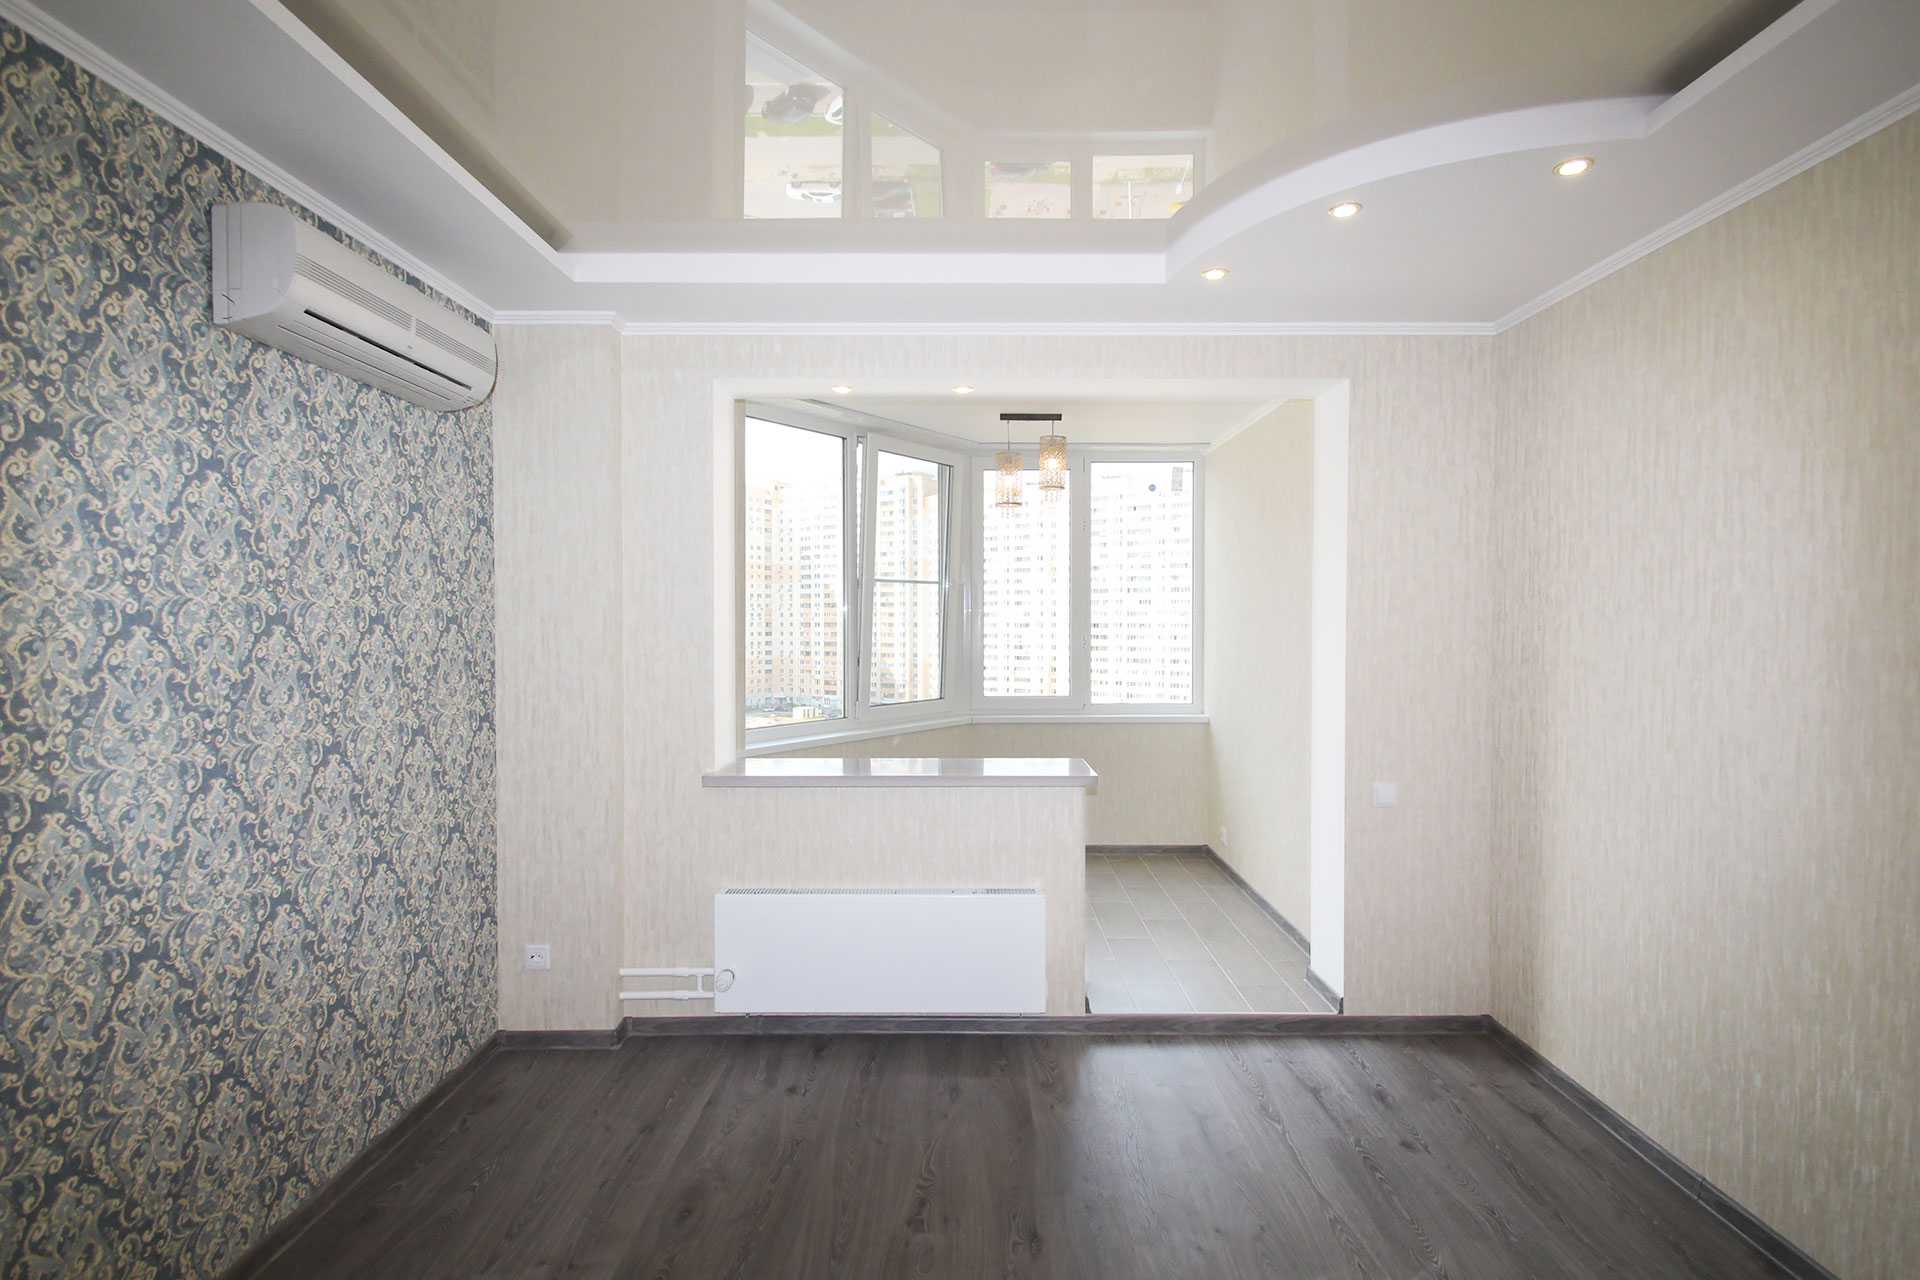 Ремонт квартир в москве под ключ - цена за 1м2 с материалом, прайс на ремонт 2021 - домус